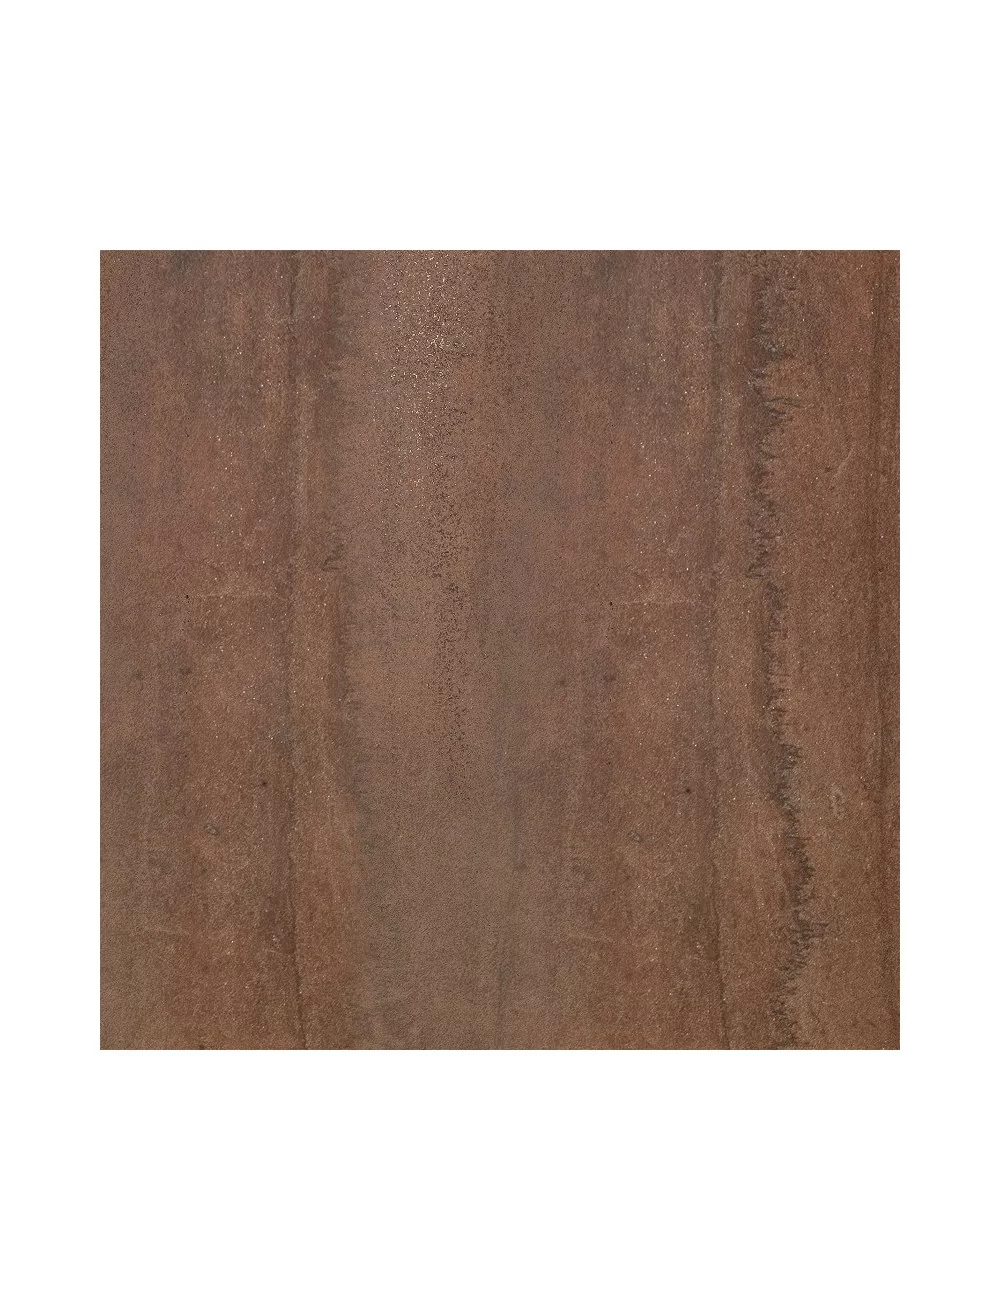 kaleido brown natural rectified surface detail